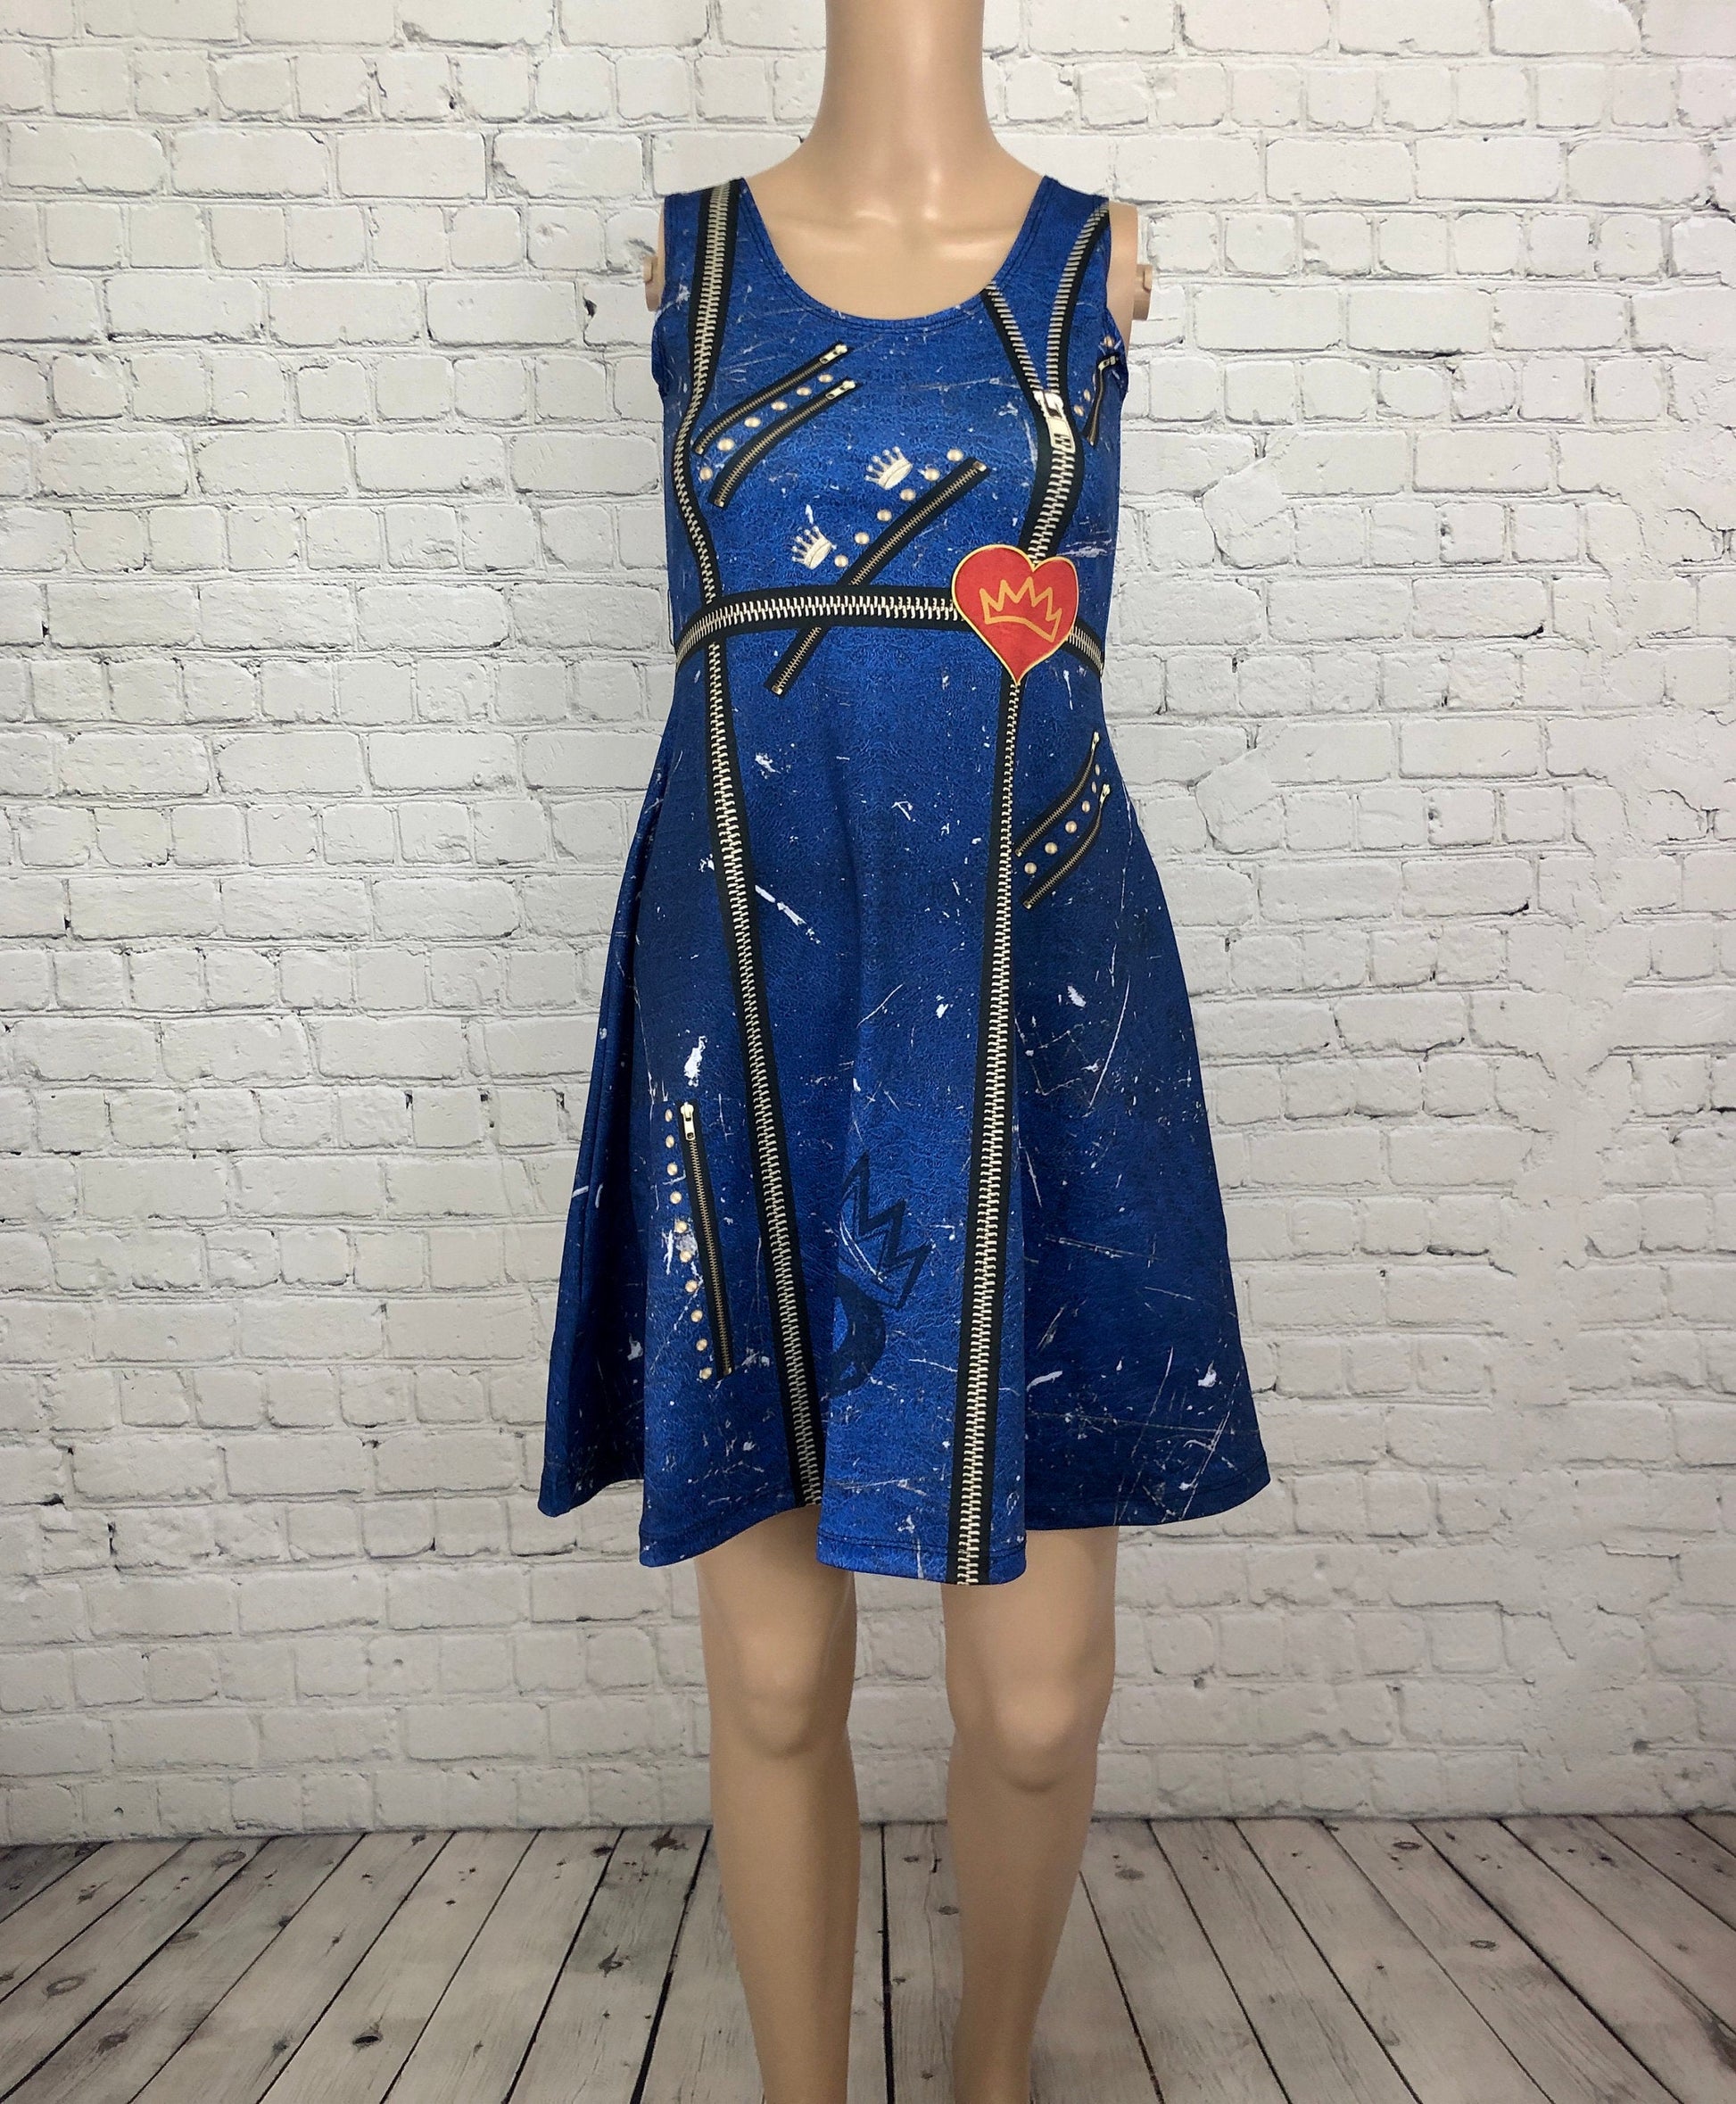 Evie Descendants Inspired Sleeveless Dress